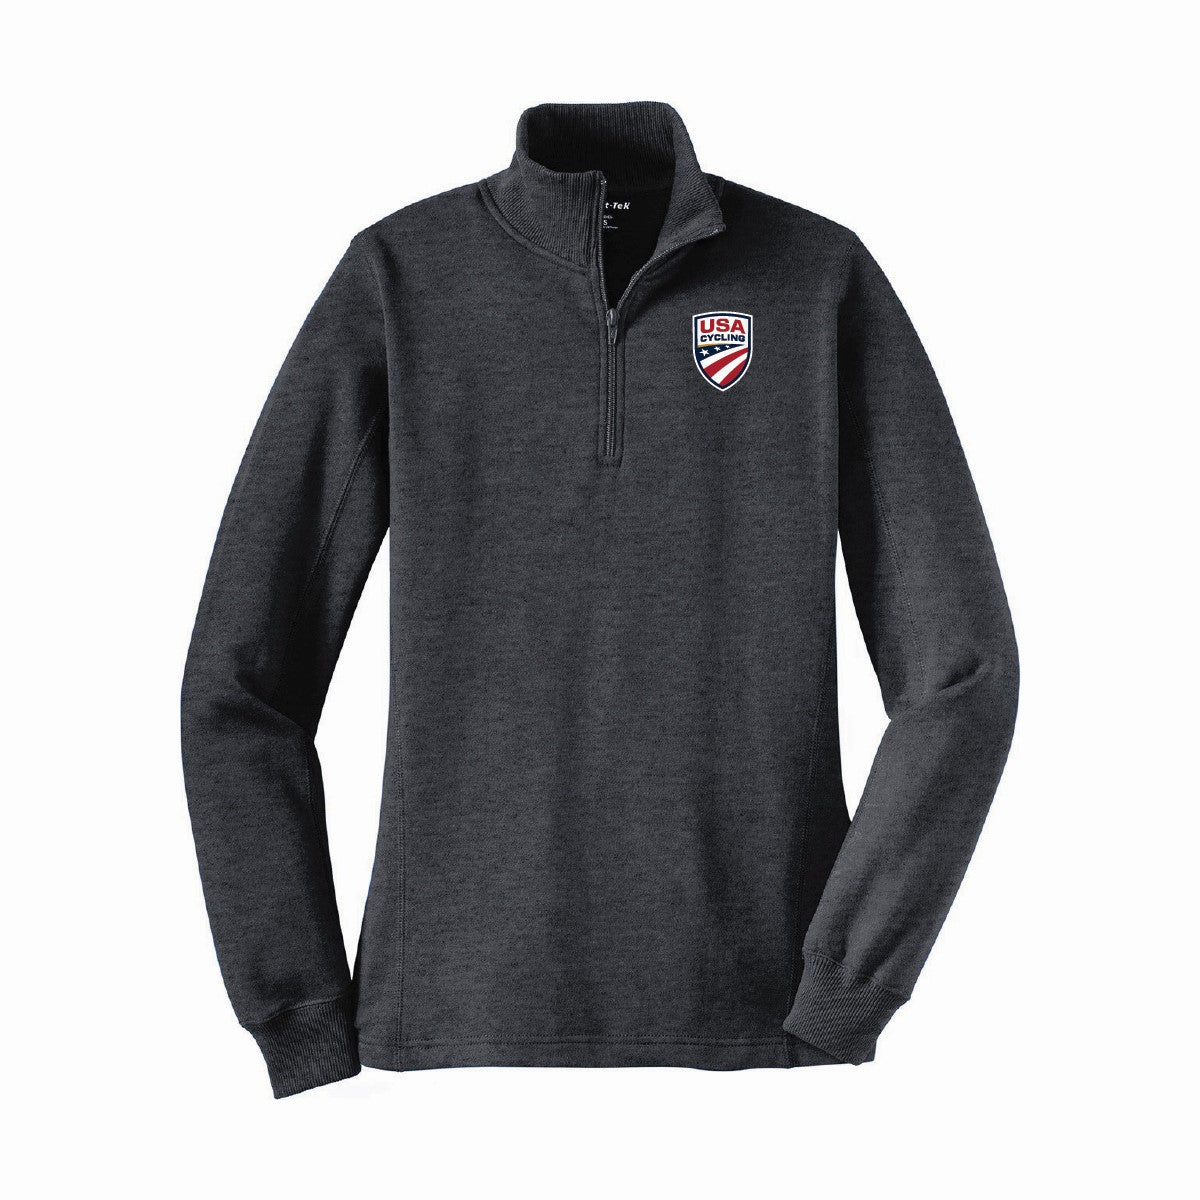 Women's USA Cycling 1/4-Zip Sweatshirt